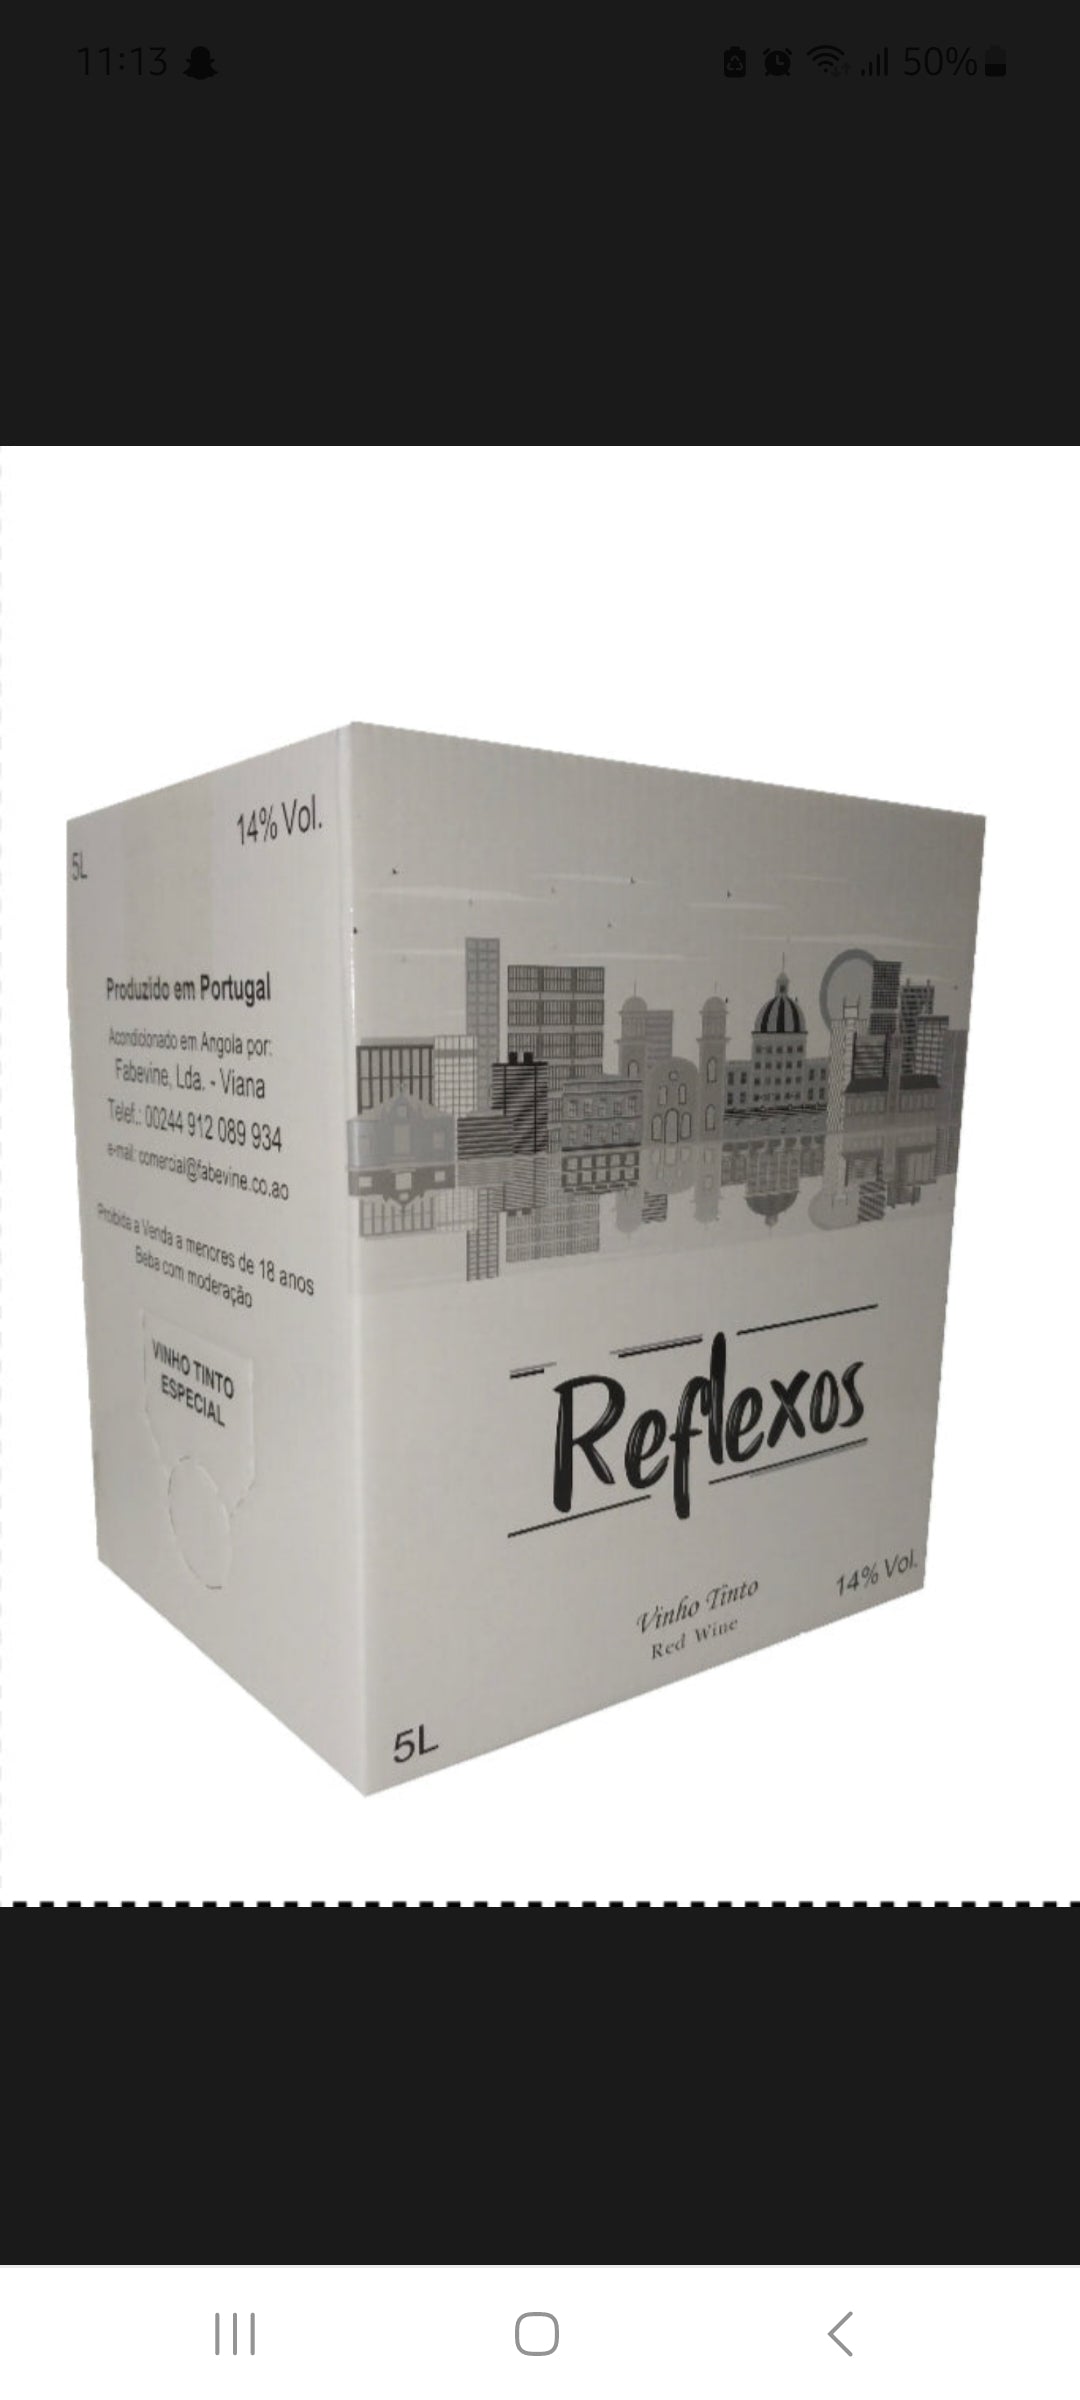 Reflexos Vinho Tinto Box 5lts